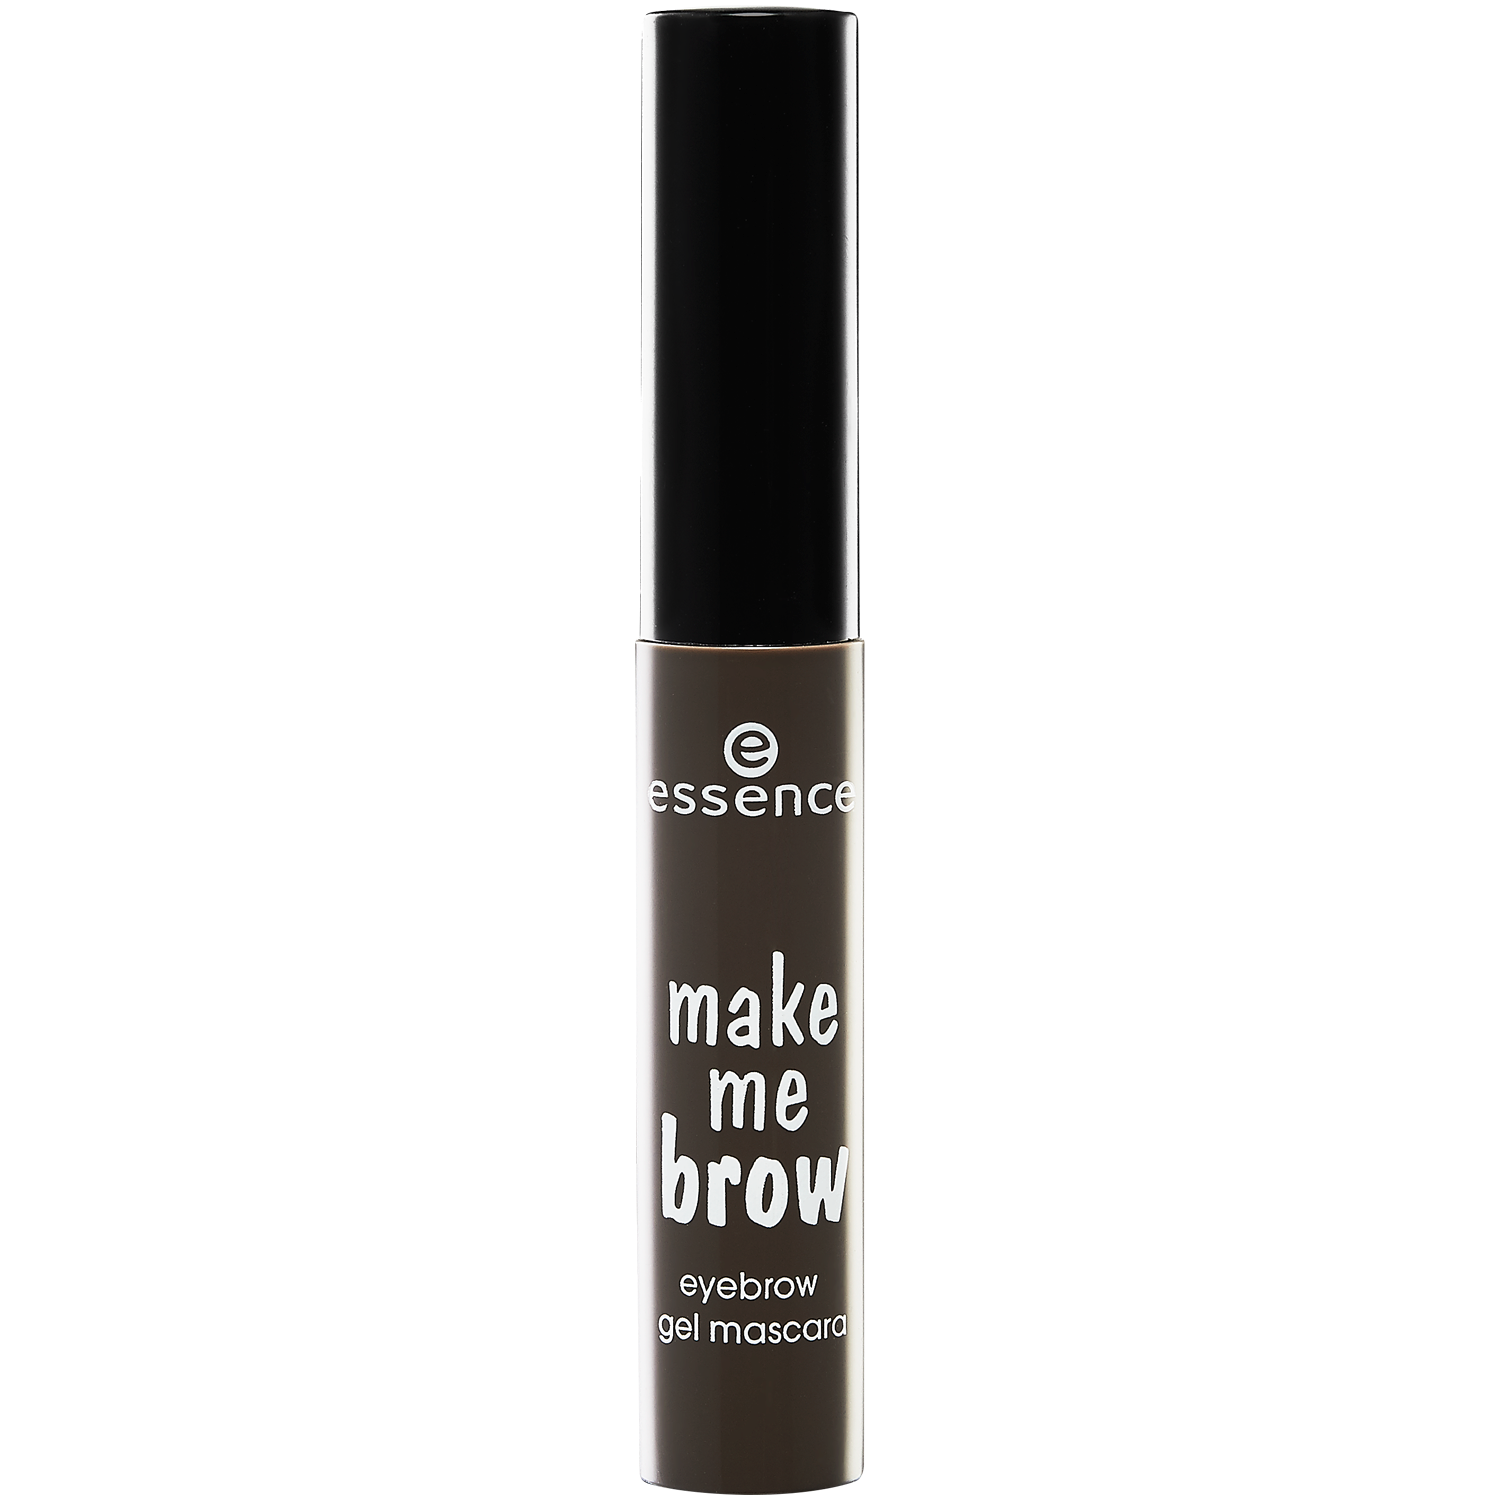 Гель для укладки бровей 02 Essence Make Me Brow, 3,8 гр тушь гель для бровей essence make me brow gel mascara 3 8 мл